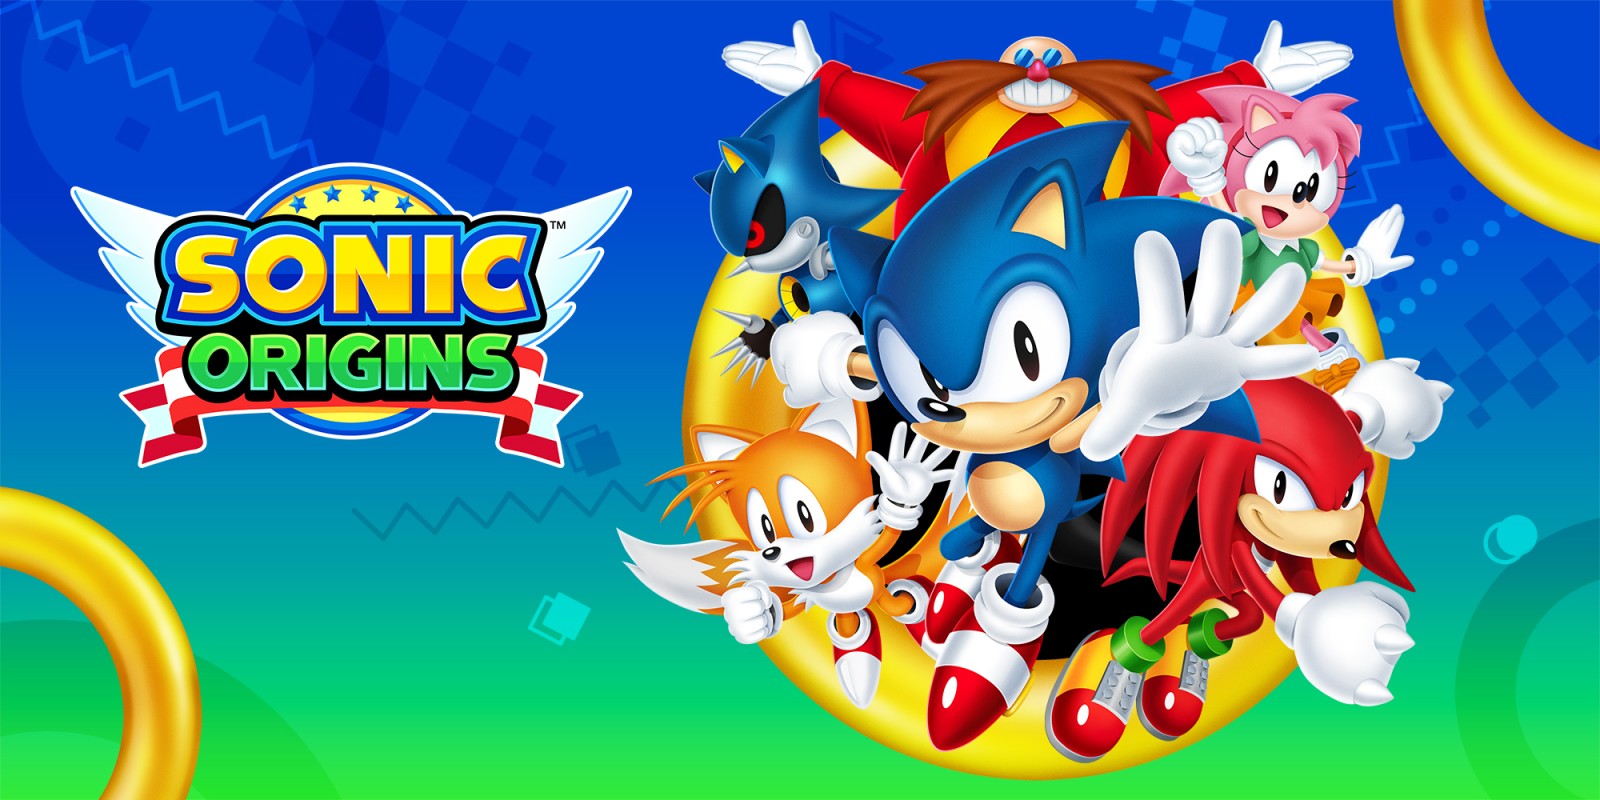 Les meilleures nouveautés Steam du mois de juin : compilation Sonics, anciennes exclusivités EGS, nouvelles Ninja Shells.